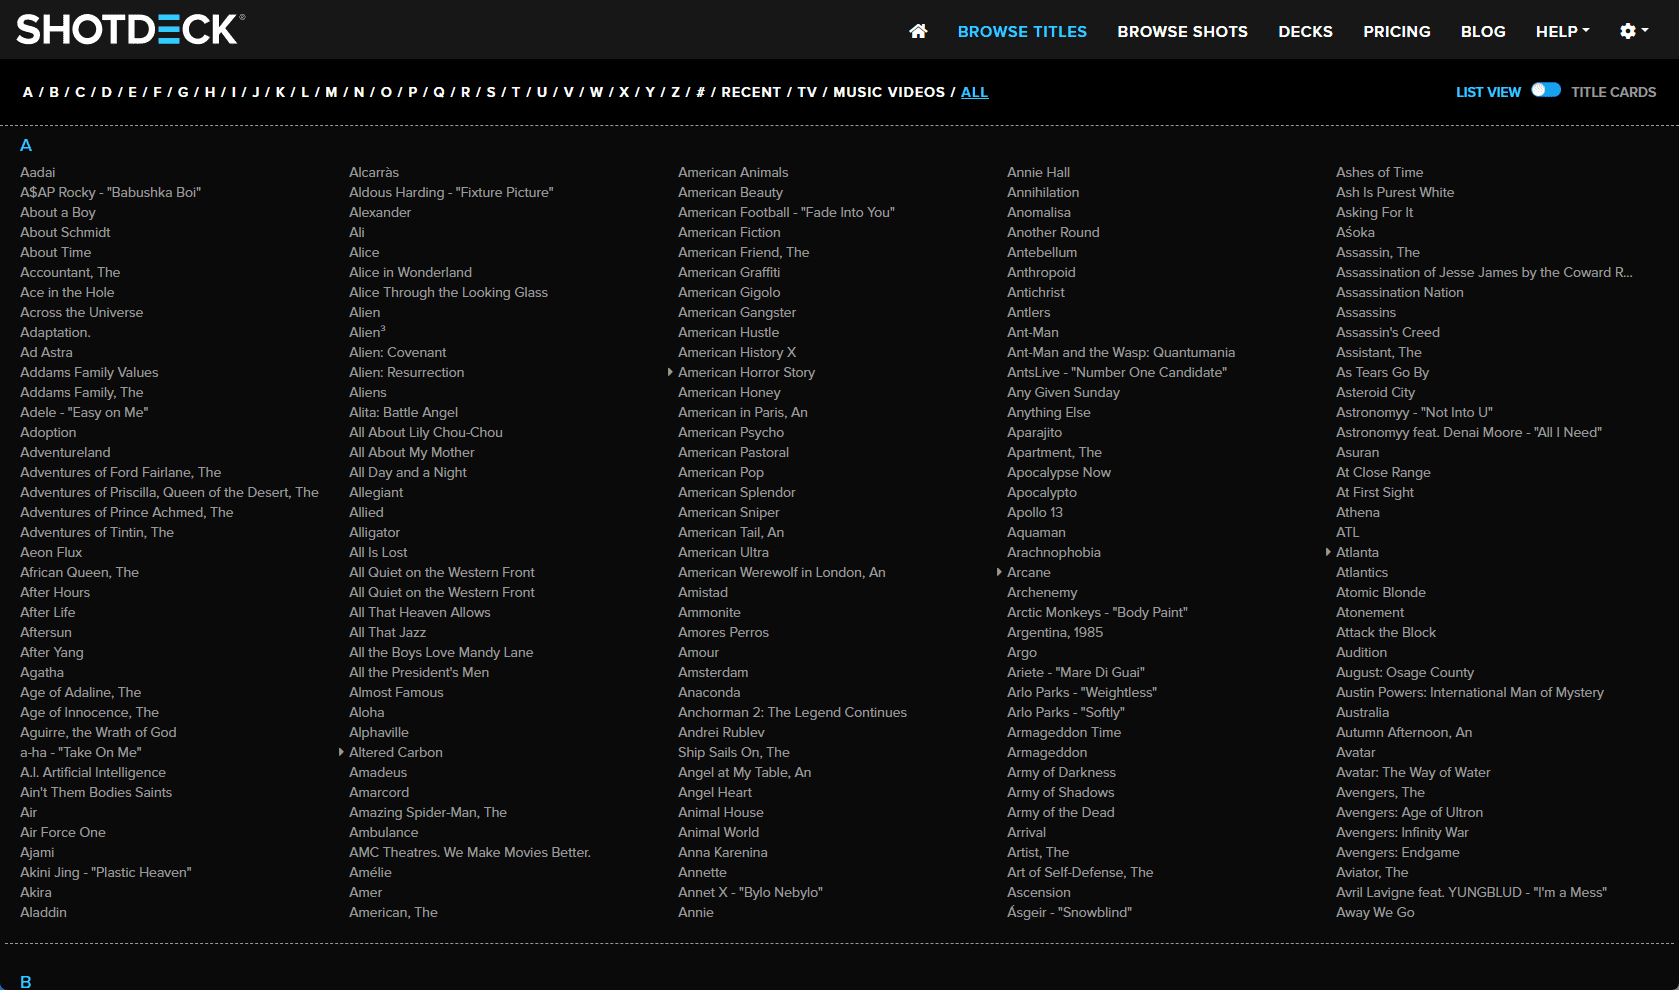 shotdeck-category-browse-titles